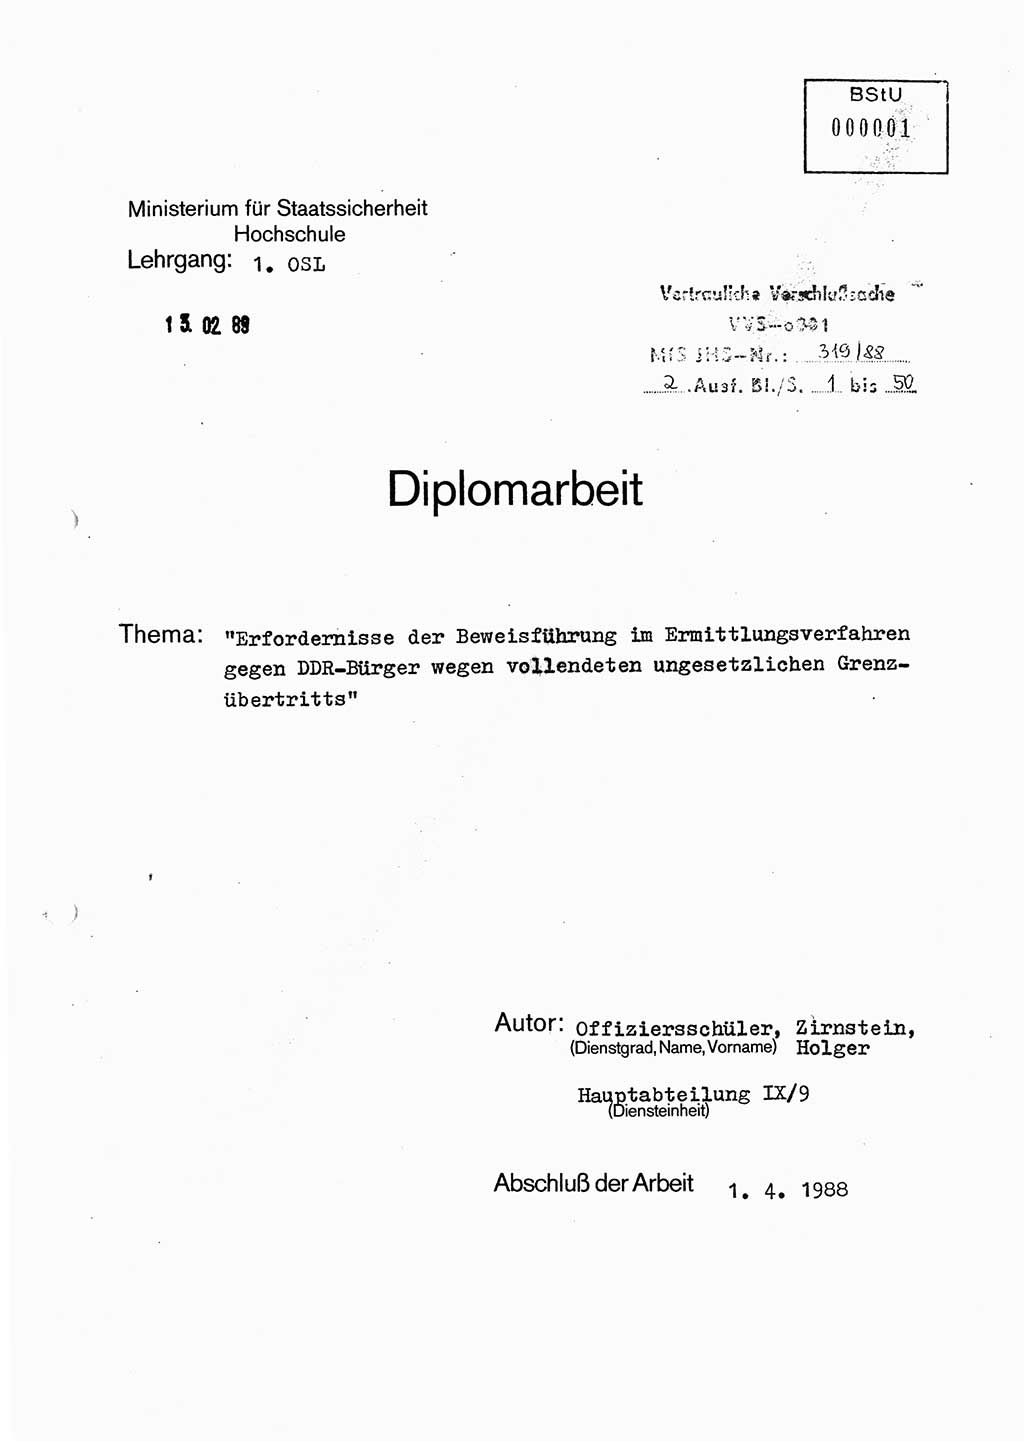 Diplomarbeit Offiziersschüler Holger Zirnstein (HA Ⅸ/9), Ministerium für Staatssicherheit (MfS) [Deutsche Demokratische Republik (DDR)], Juristische Hochschule (JHS), Vertrauliche Verschlußsache (VVS) o001-319/88, Potsdam 1988, Blatt 1 (Dipl.-Arb. MfS DDR JHS VVS o001-319/88 1988, Bl. 1)